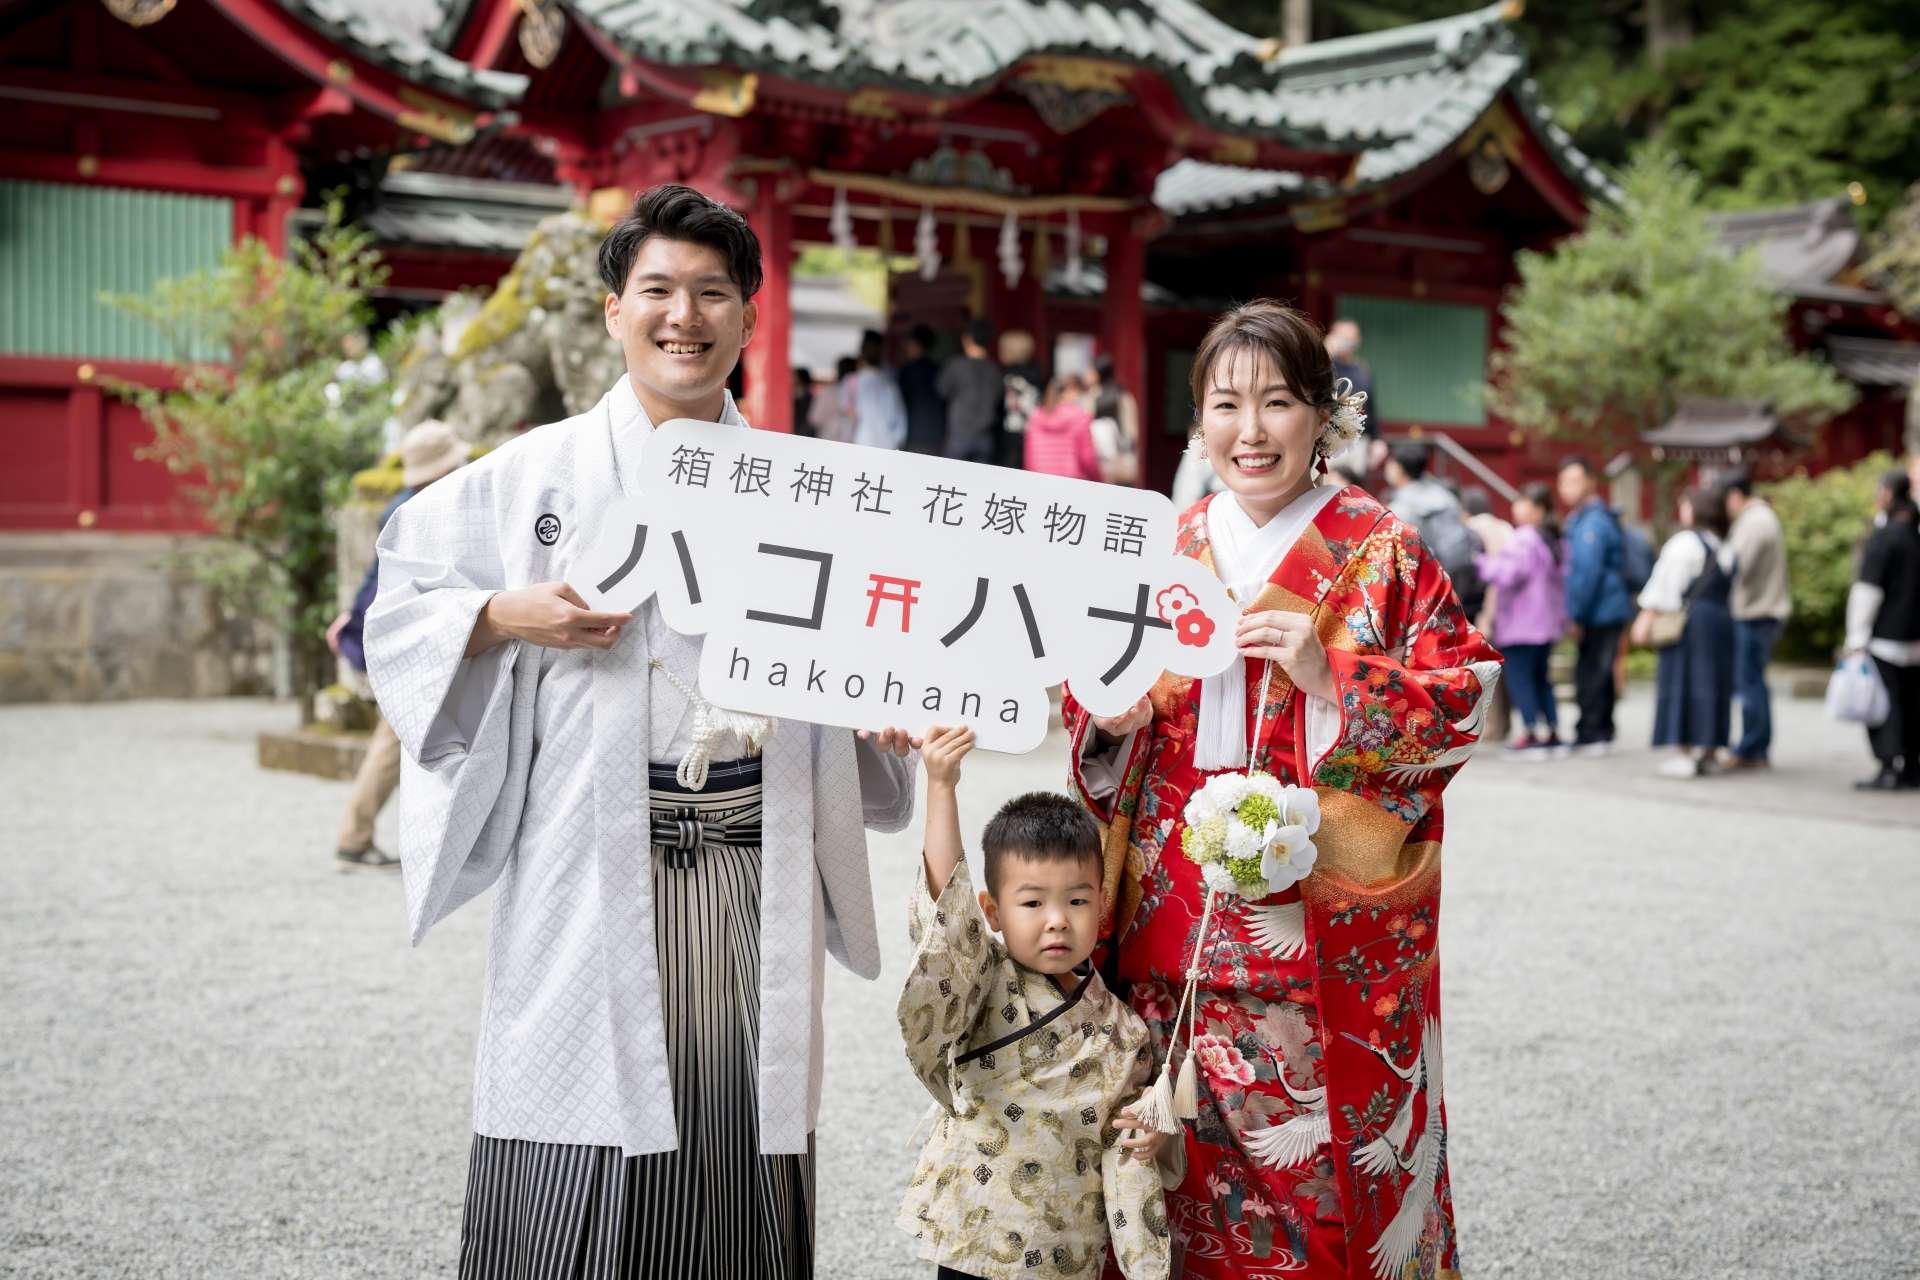 箱根神社での挙式は厳かで、身の引き締まる気持ちになりました。